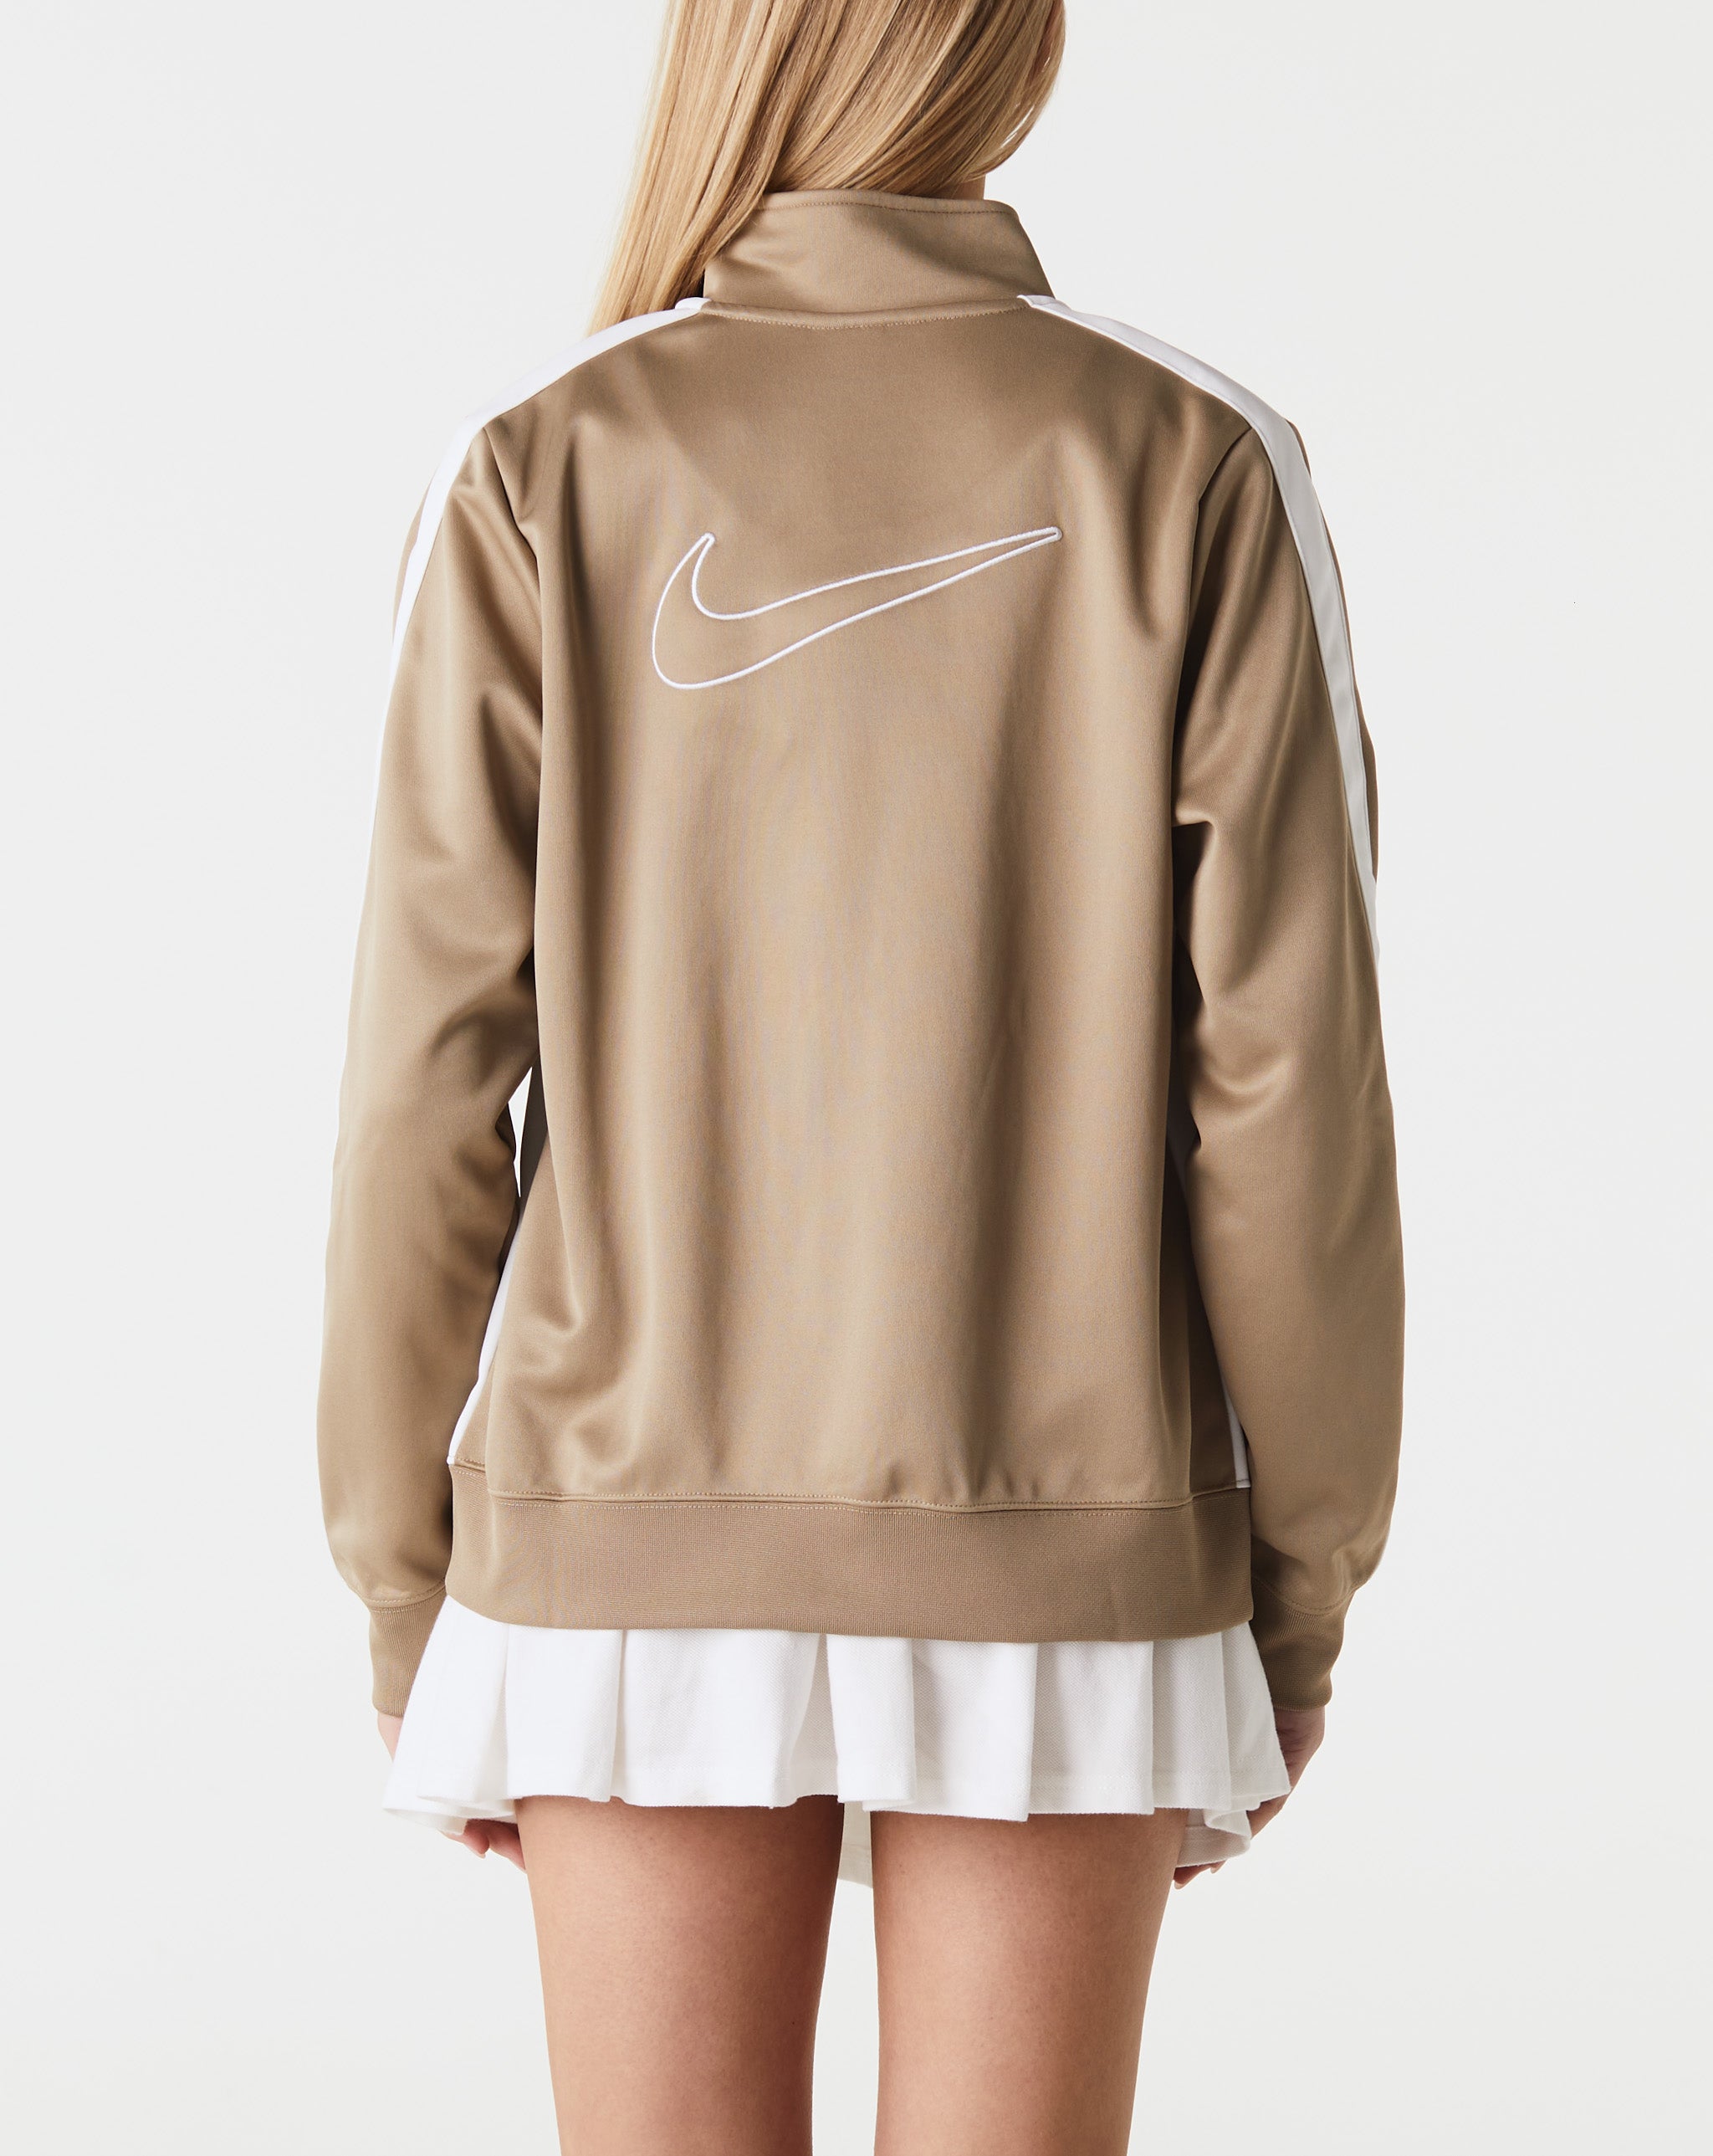 Nike tailwind Women's Jacket  - Cheap Urlfreeze Jordan outlet